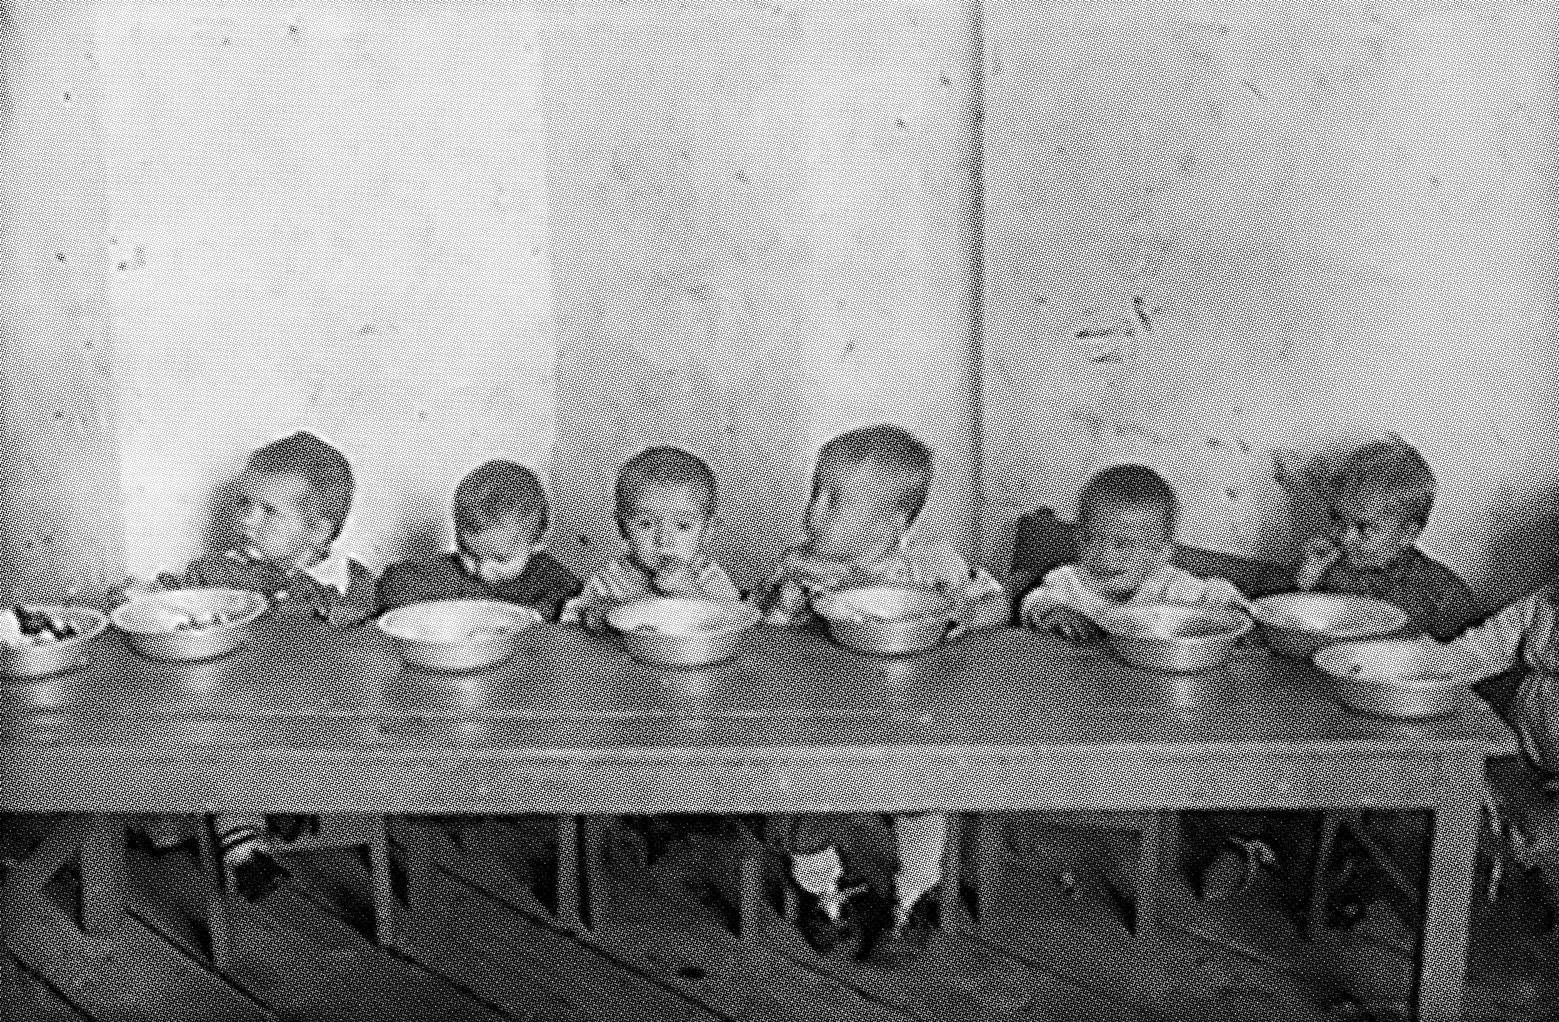 Фотография из фотоальбома «Ягринский исправительно-трудовой лагерь». 1946 г. Из фондов ГА РФ